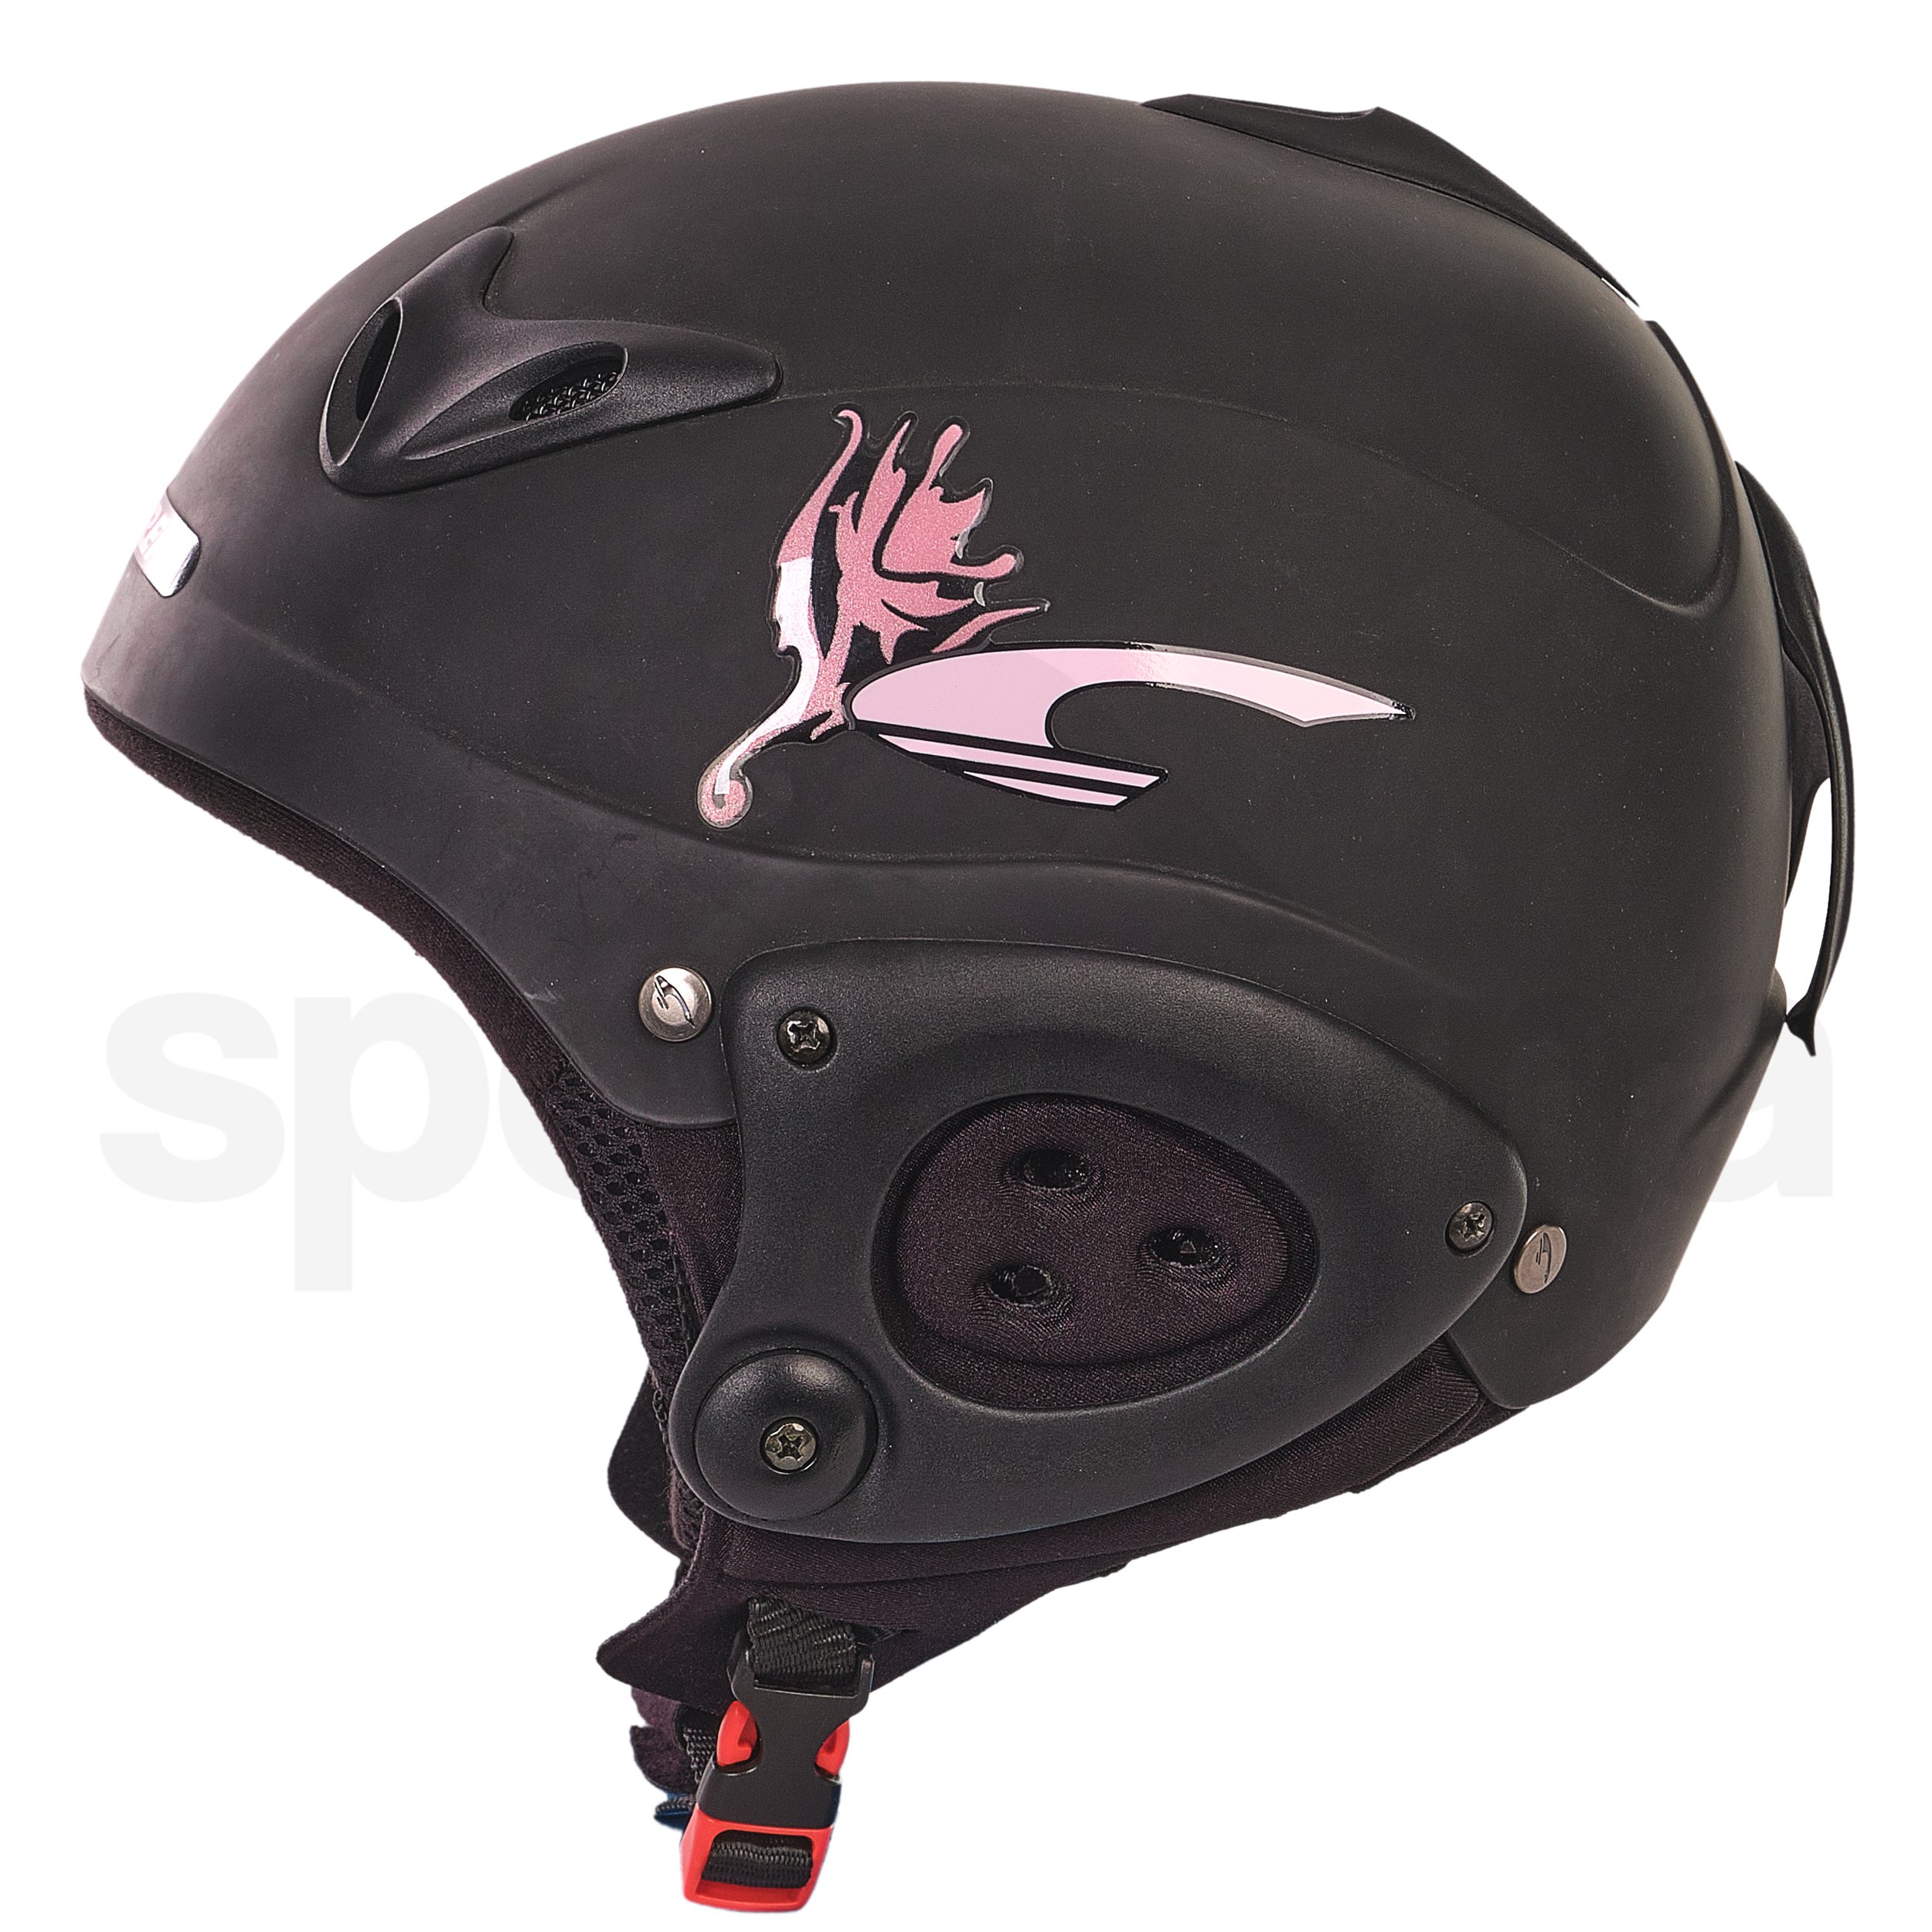 Lyžařská helma Carrera Ski Nerve 2.6. - černá